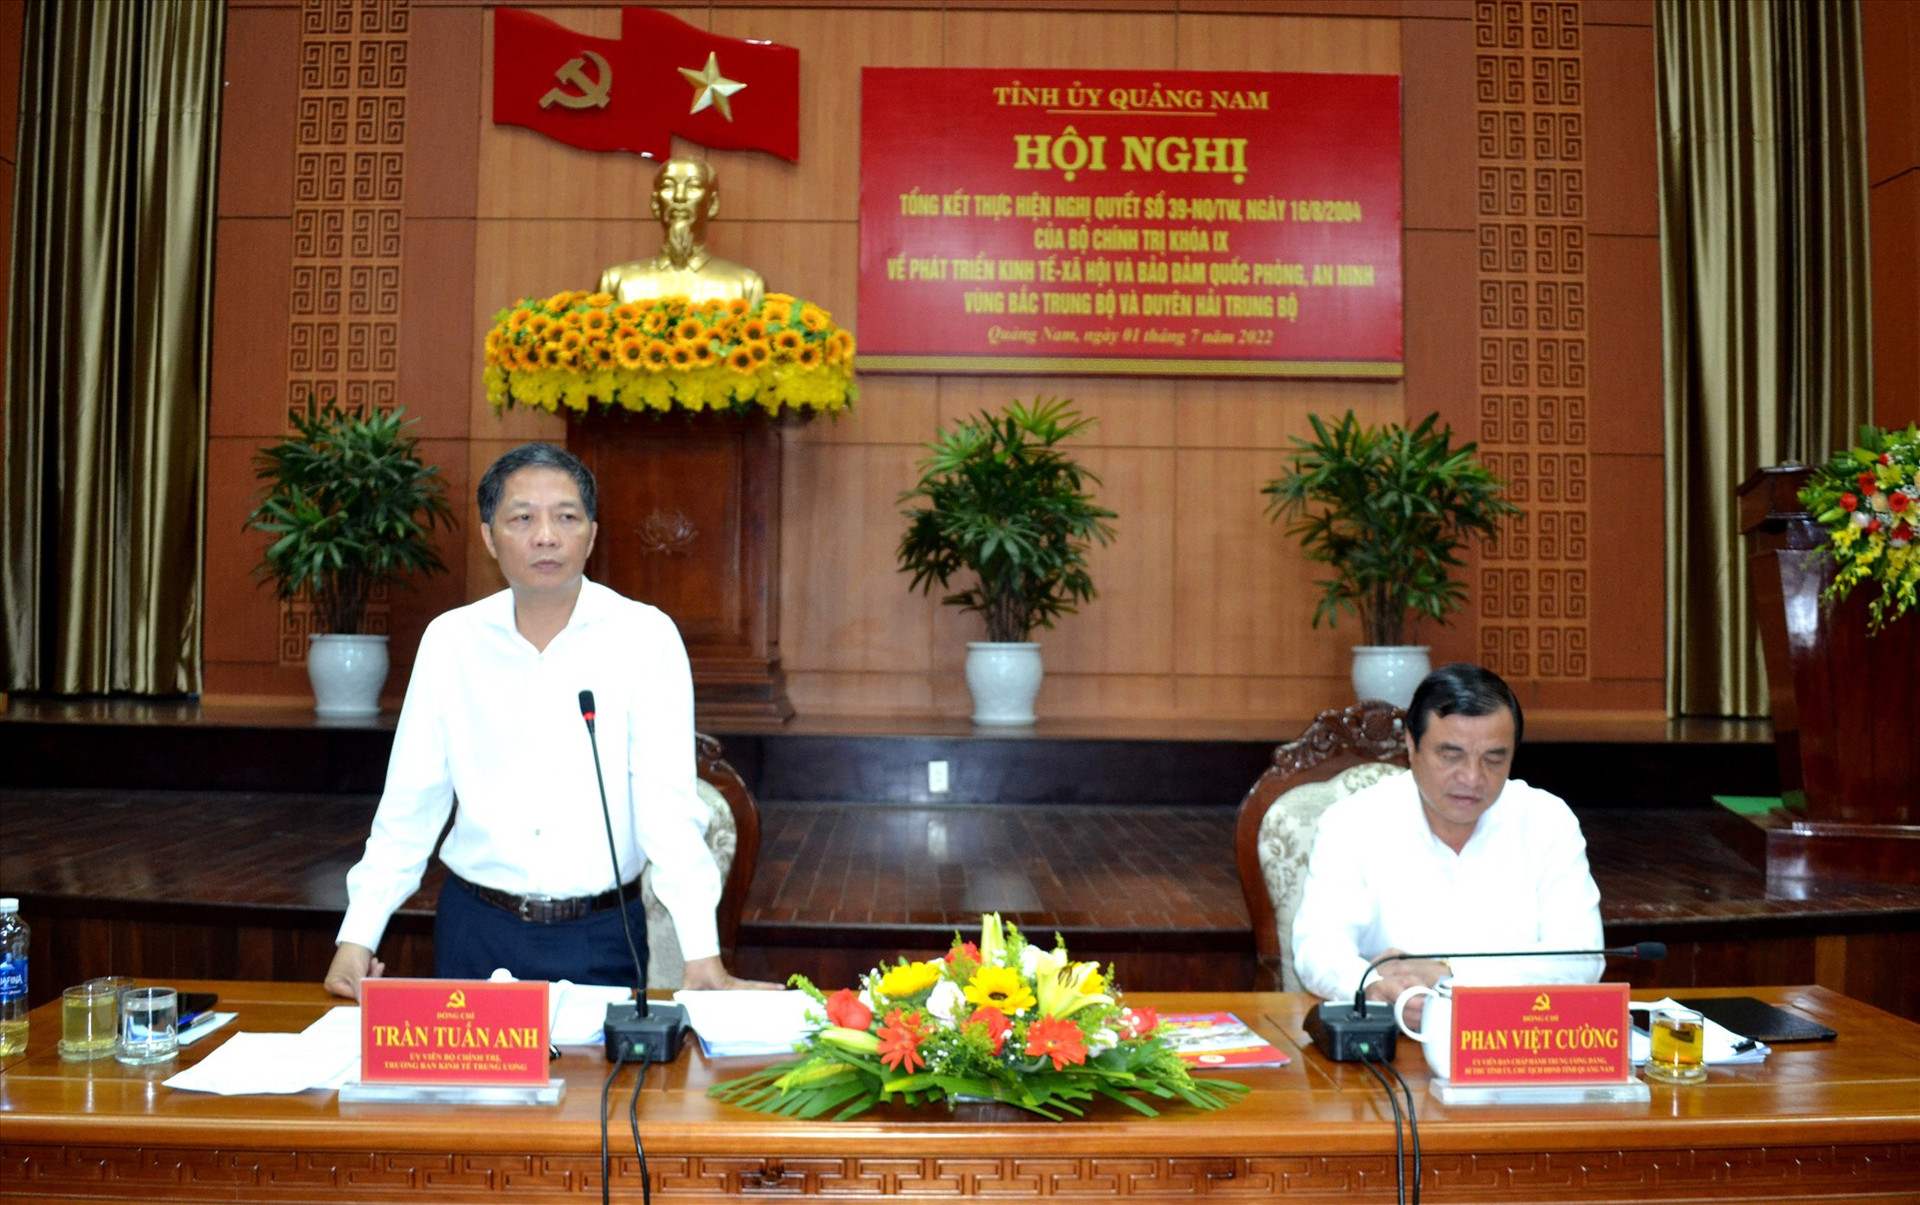 Đồng chí Phan Việt Cường và Trần Tuấn Anh chủ trì hội nghị tổng kết thực hiện Nghị quyết số 39 của Bộ Chính trị. Ảnh: NGUYỄN QUANG